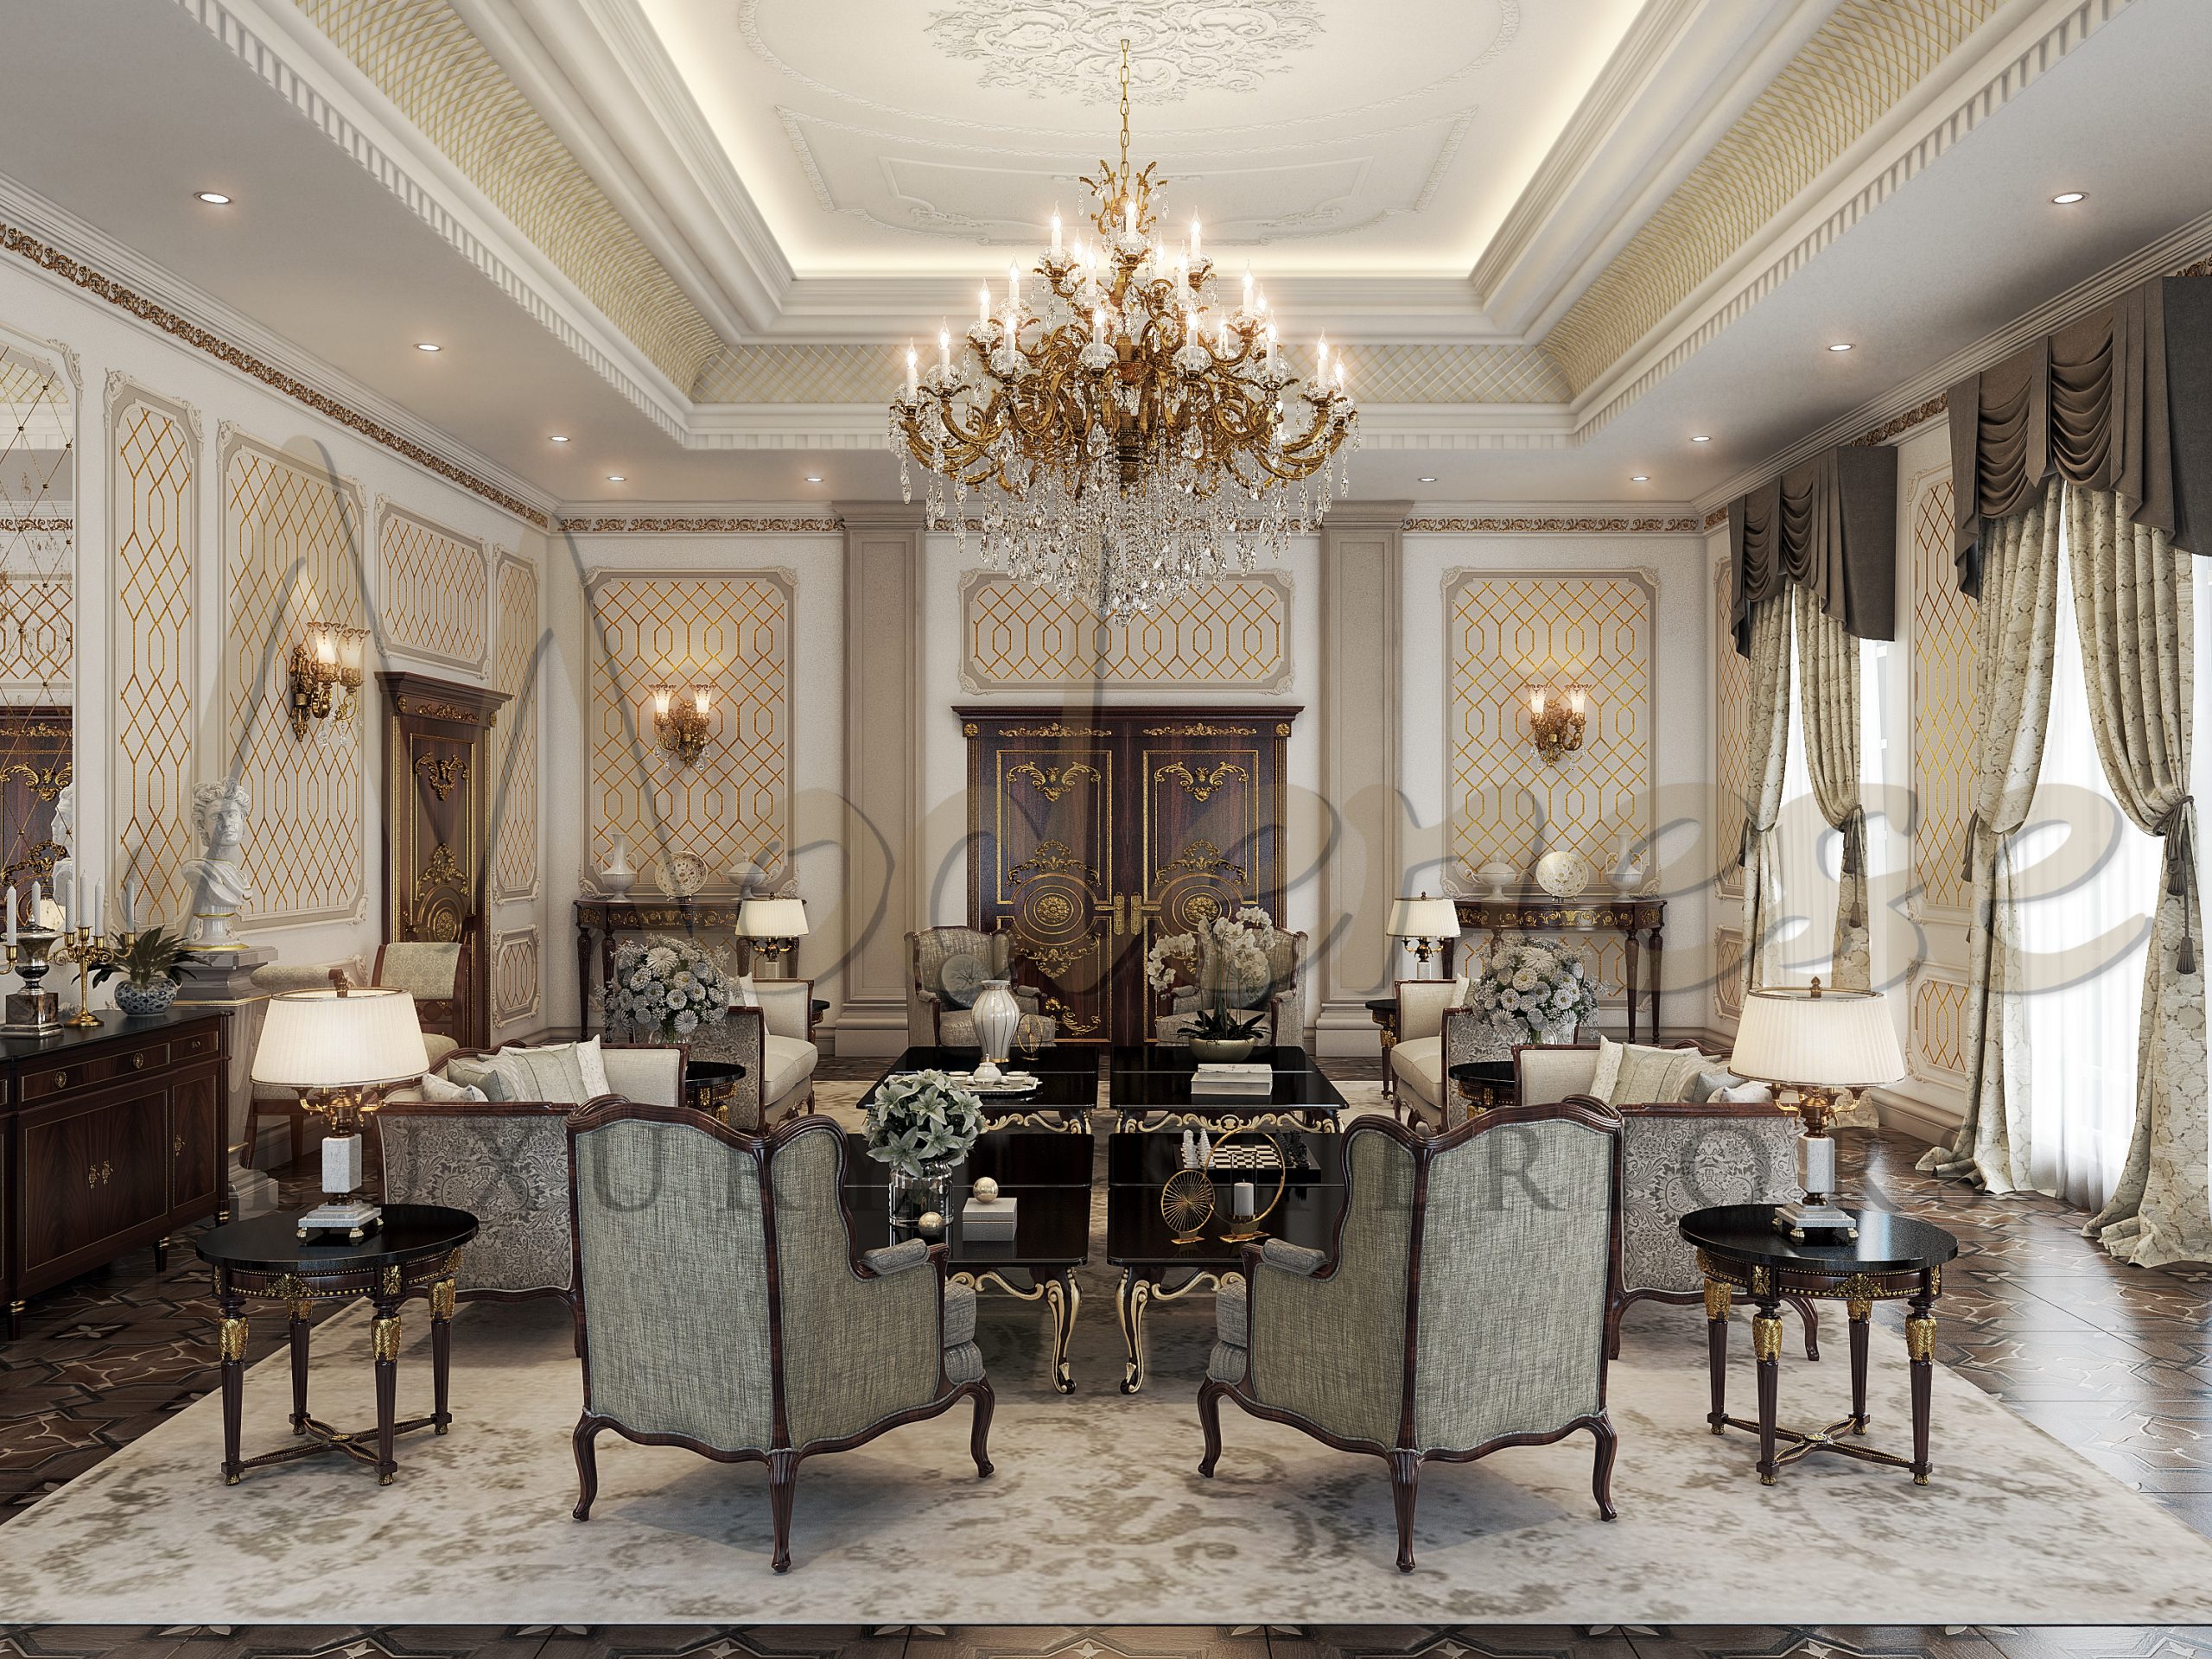 تصميم فيلا فاخرة من Modenese Luxury Interiors ، جدة، المملكة العربية السعودية